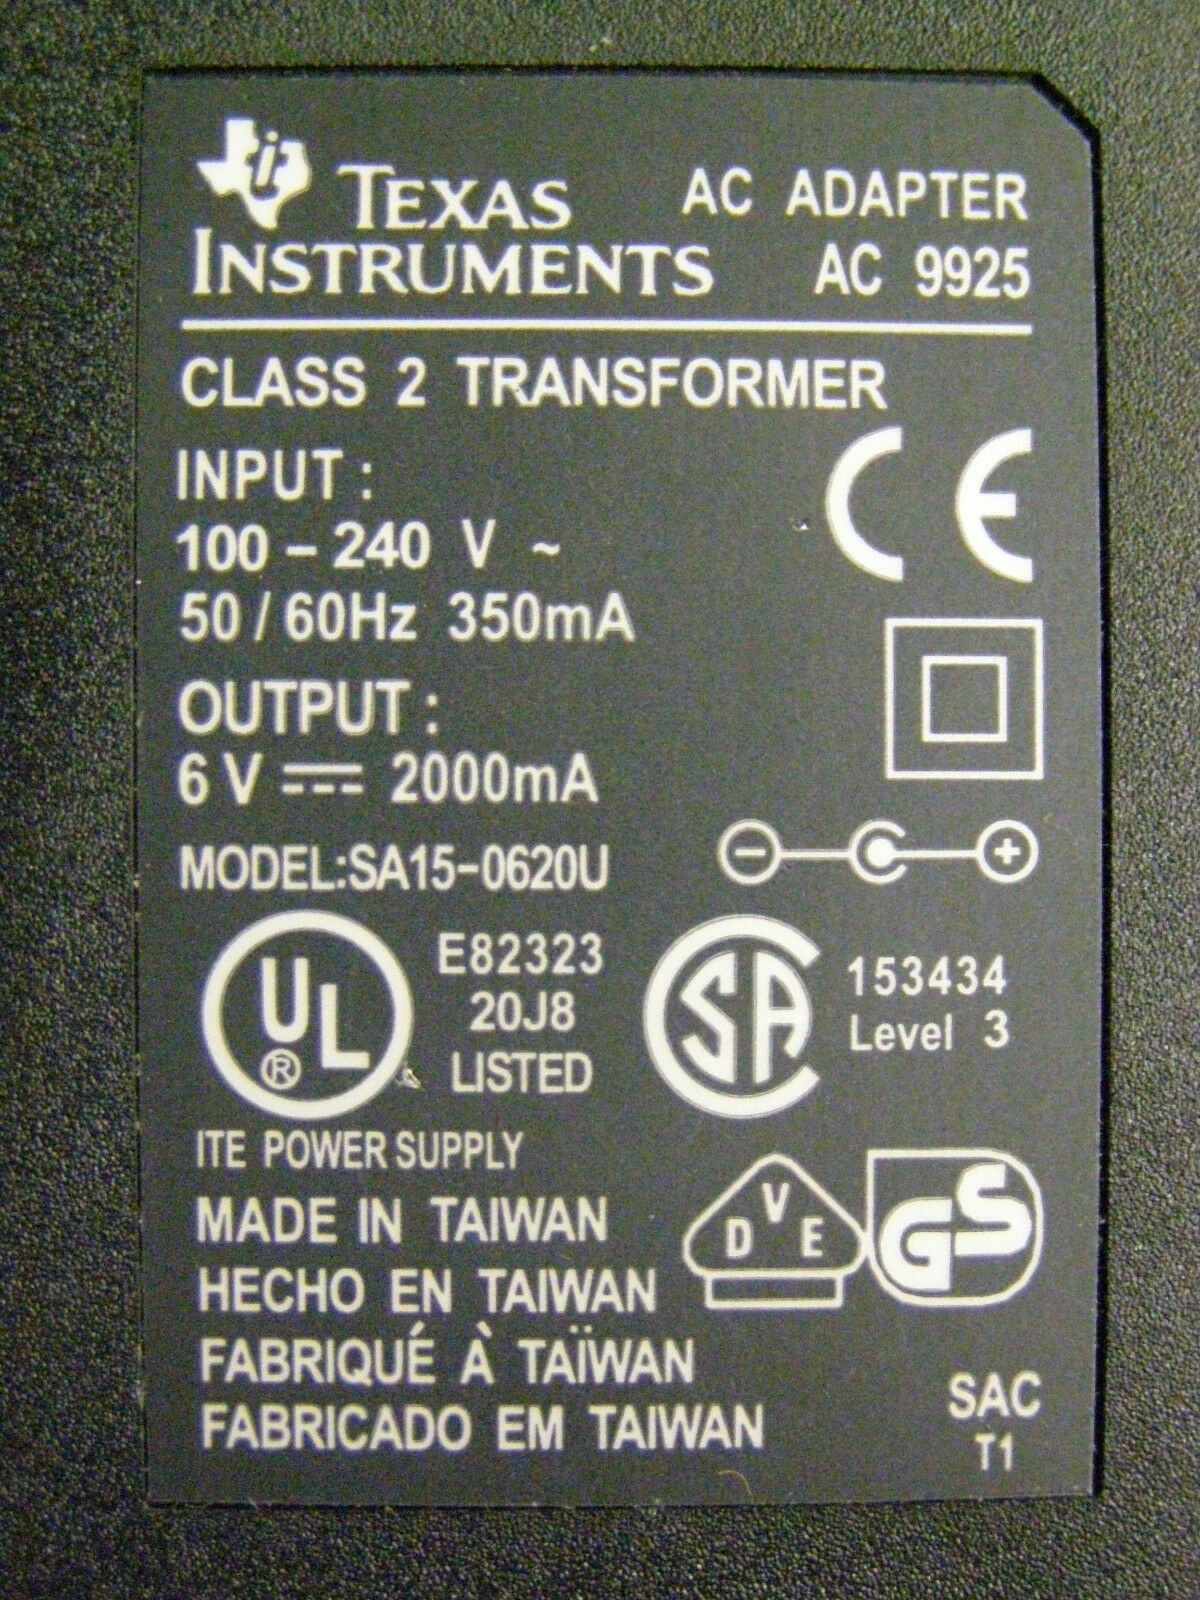 *Brand NEW* 6V 2A TEXAS INSTRUMENTS SA15-0620U Class 2 Transformer Ac Adapter - Click Image to Close